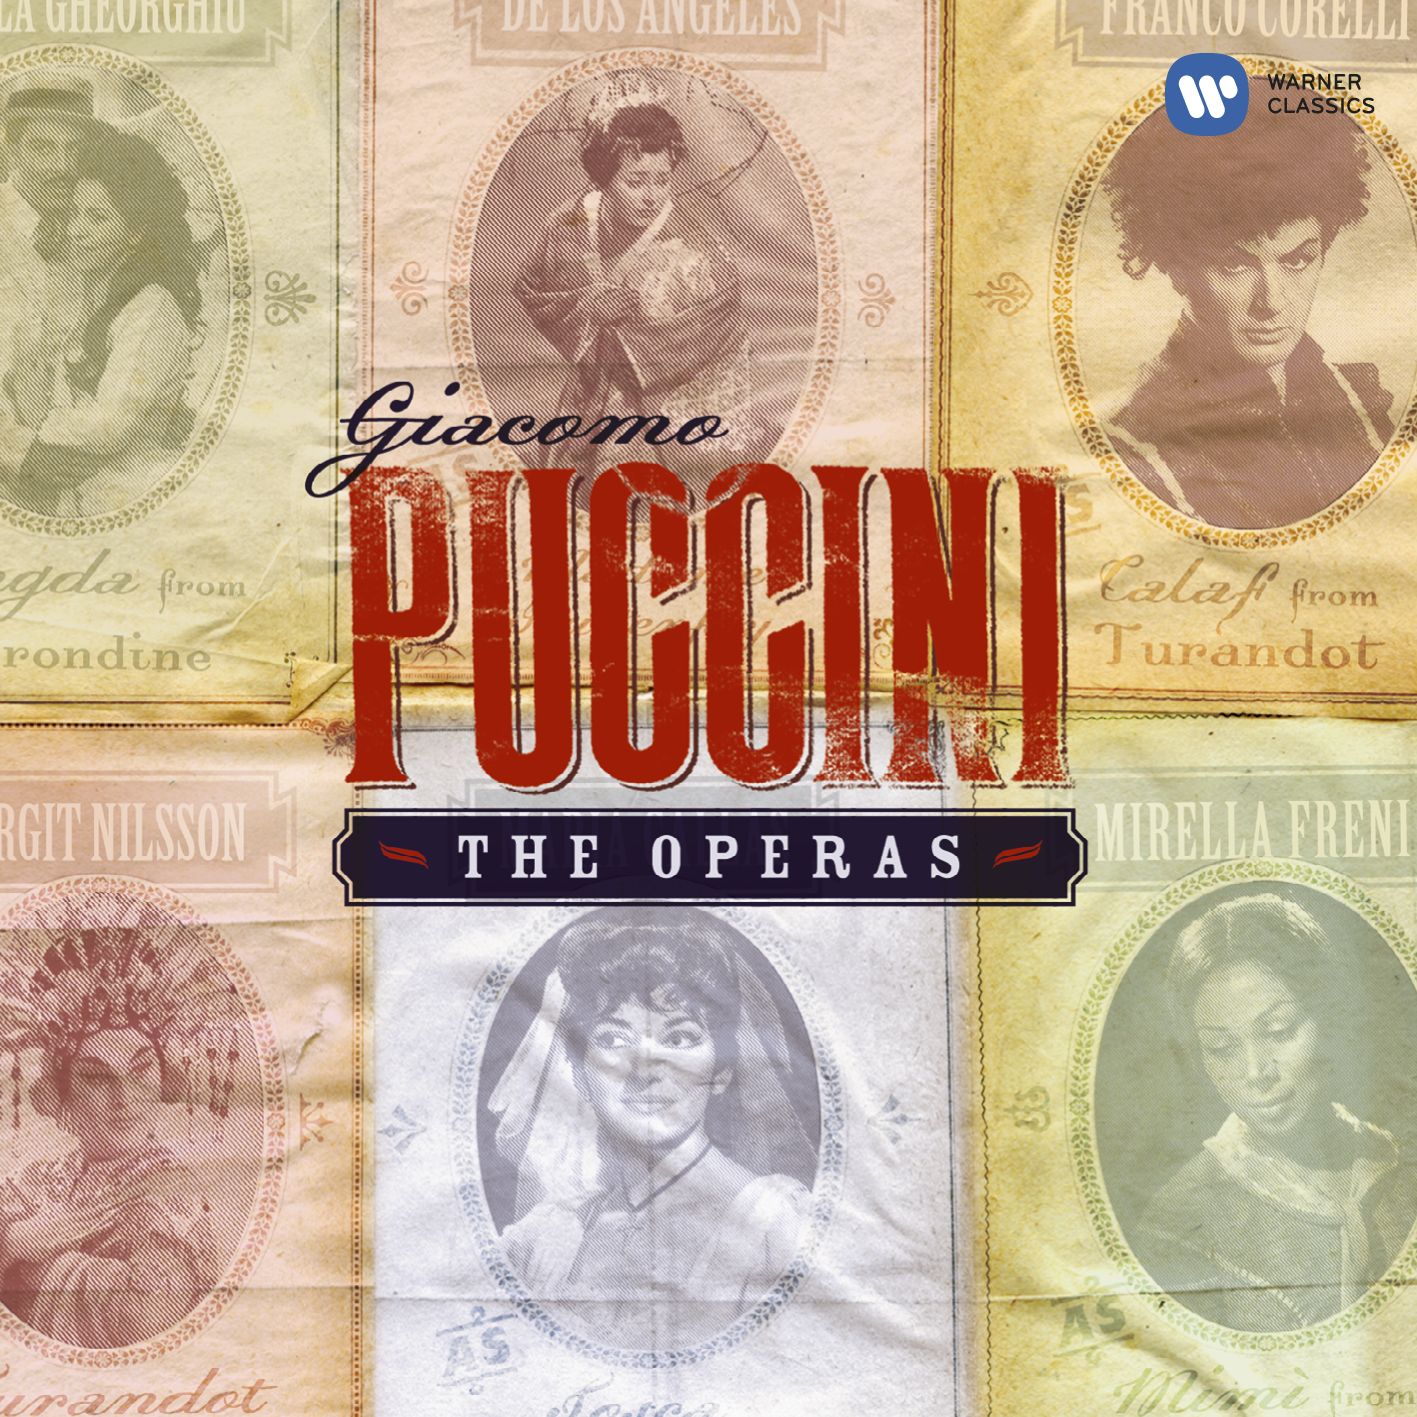 Turandot (libretto by Giuseppe Adami & Renato Simoni, after Carlo Gozzi) (1988 Digital Remaster), ACT 1: Figlio, che fai? (Timur